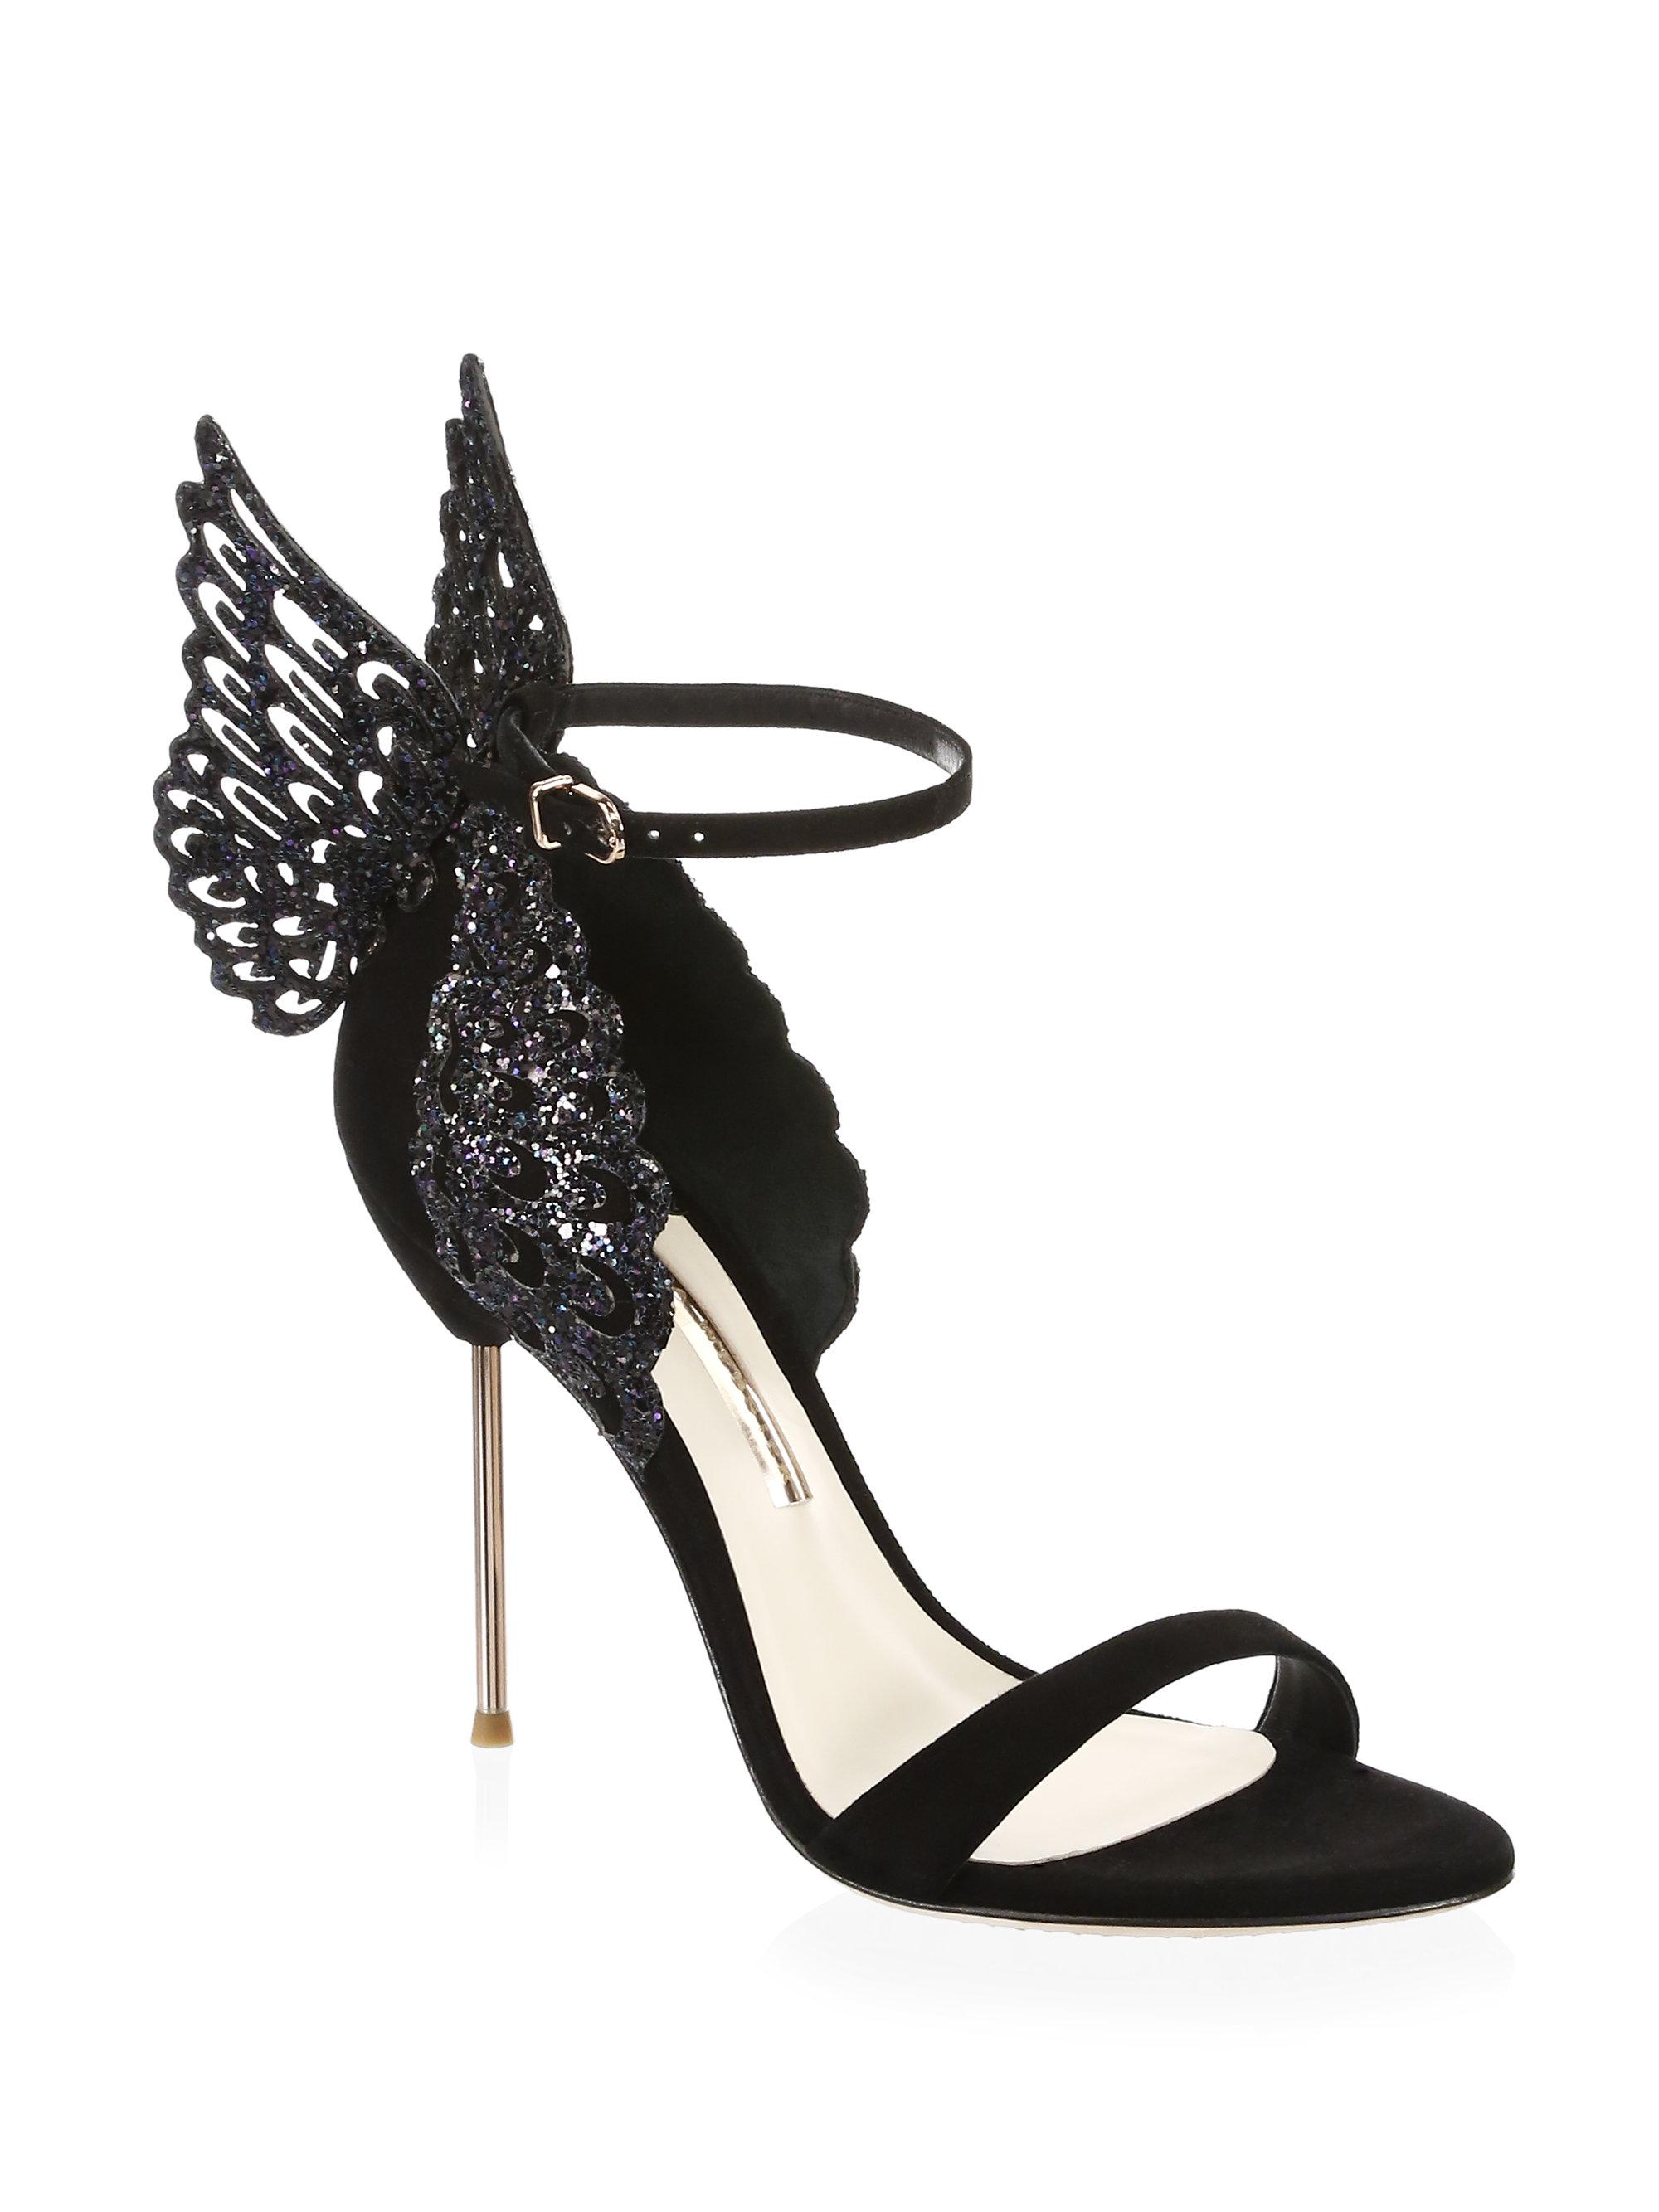 black sophia webster heels